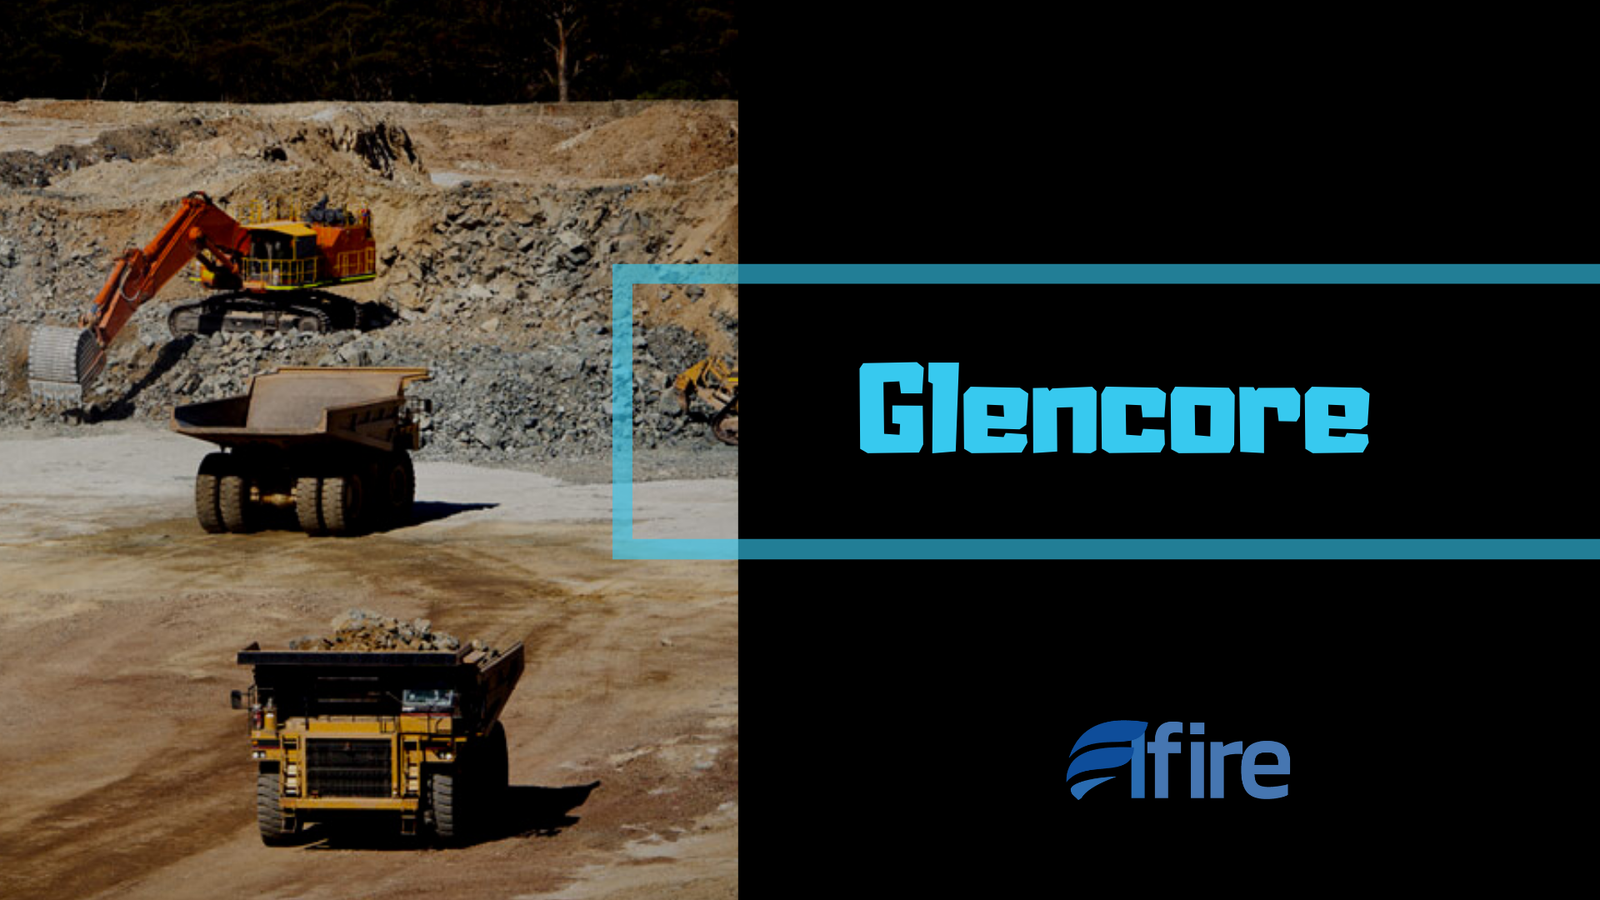 Glencore Mineradora - subestações Elétricas, Salas de Transformadores